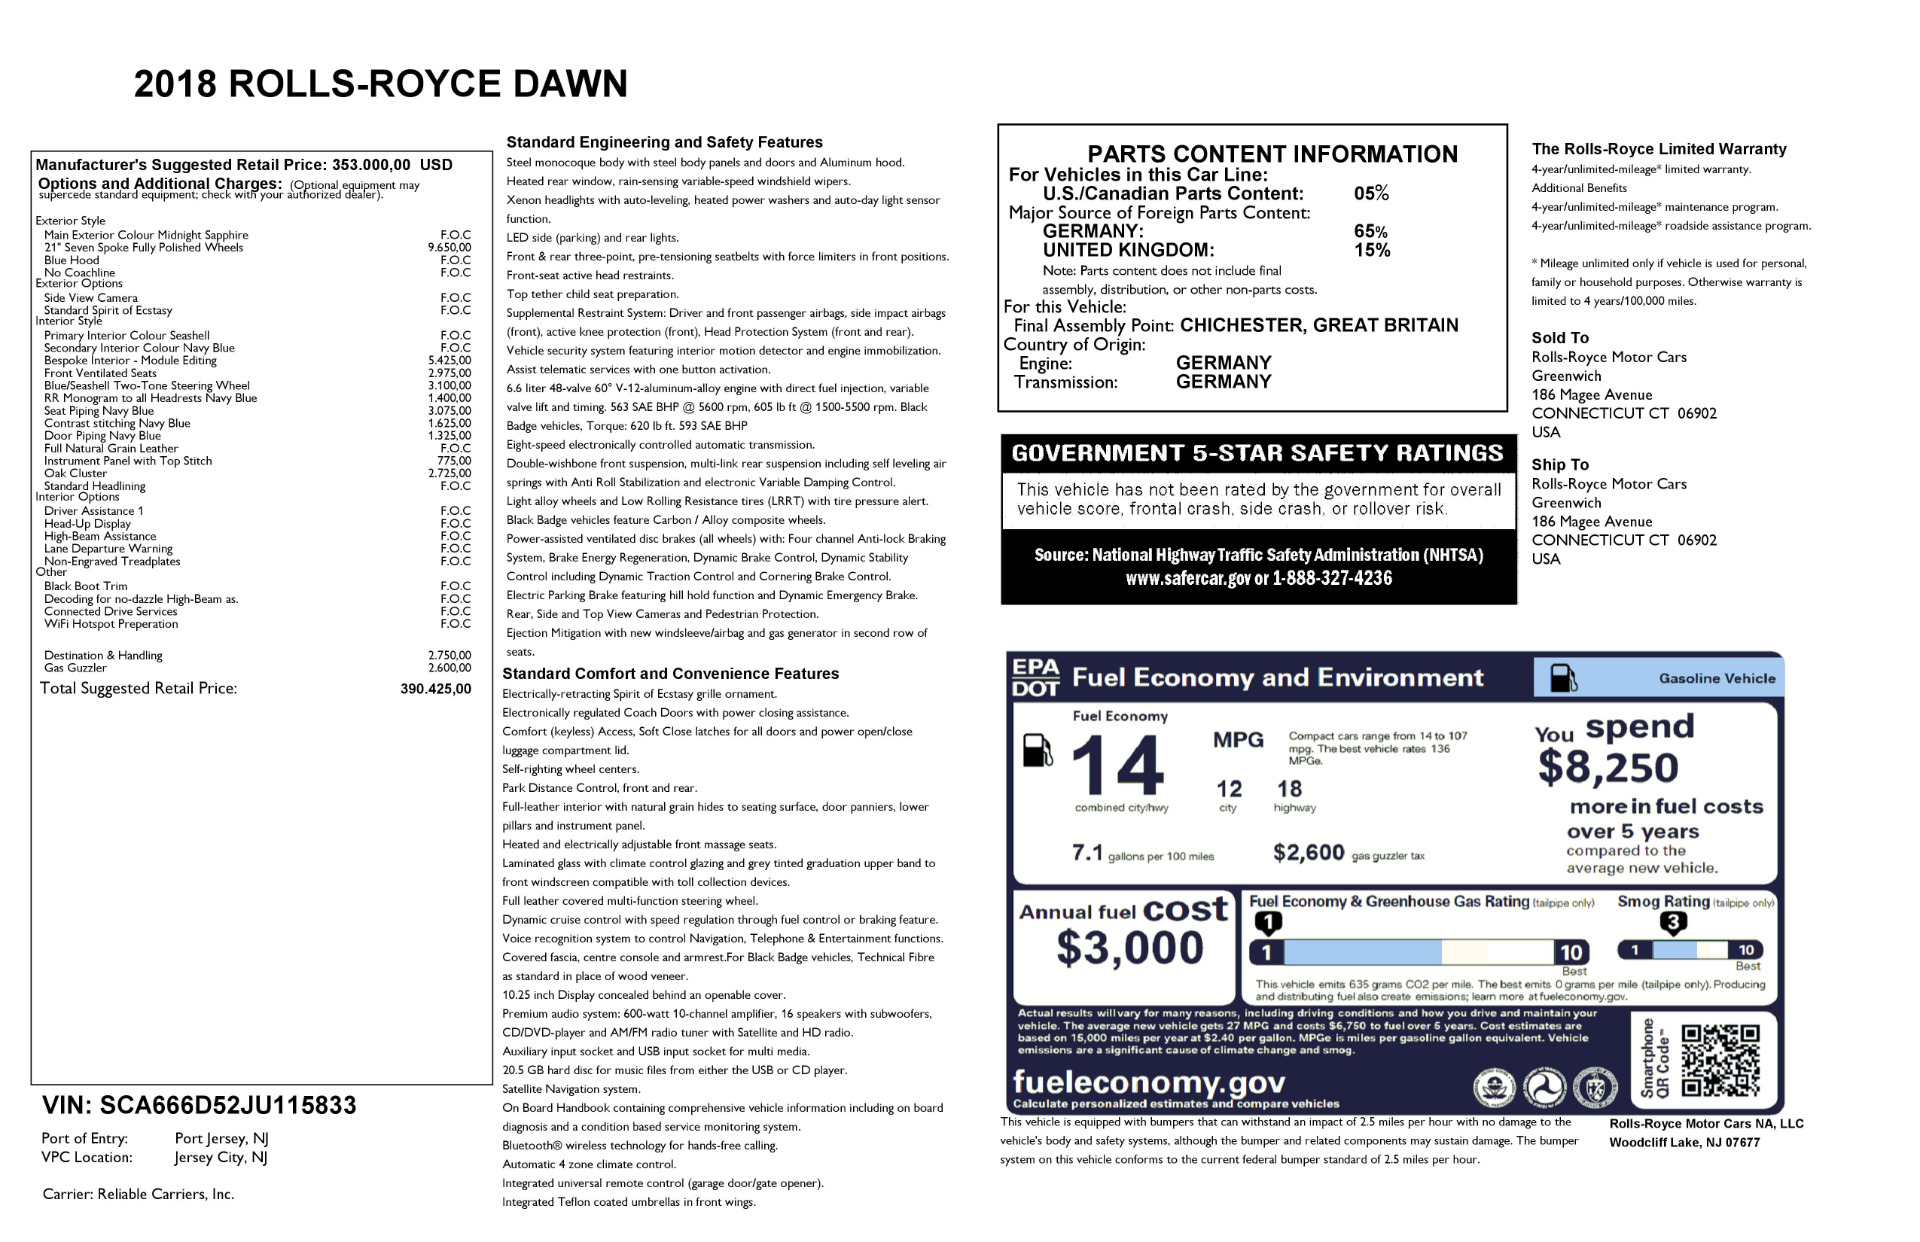 New-2018-Rolls-Royce-Dawn